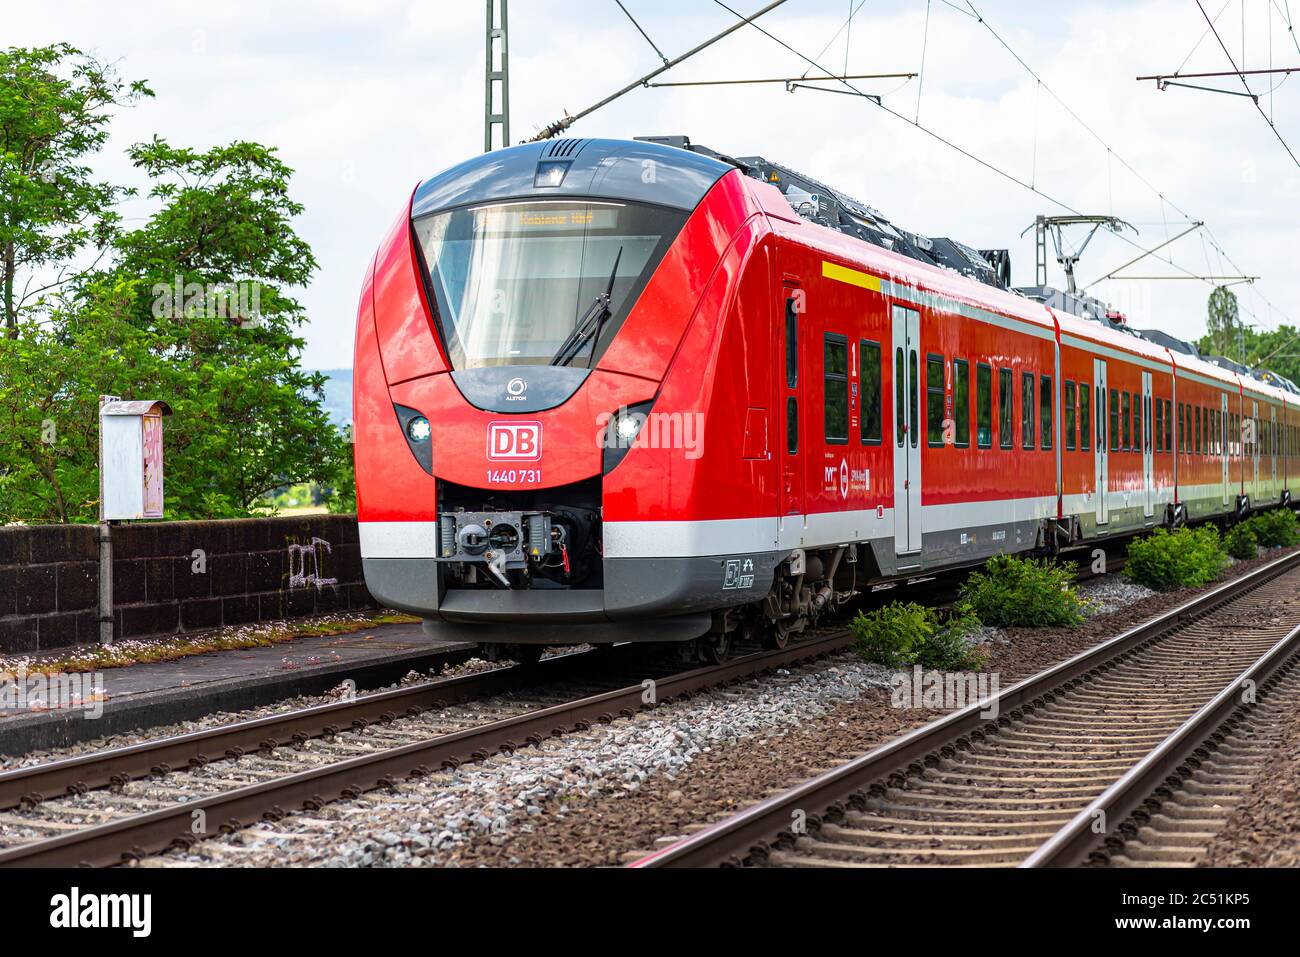 Koblenz Deutschland, 22. Juni 2020. Ein elektrischer Personenzug der Deutschen Bahn AG, der an einem kleinen Bahnhof in Koblenz i ankommt Stockfoto